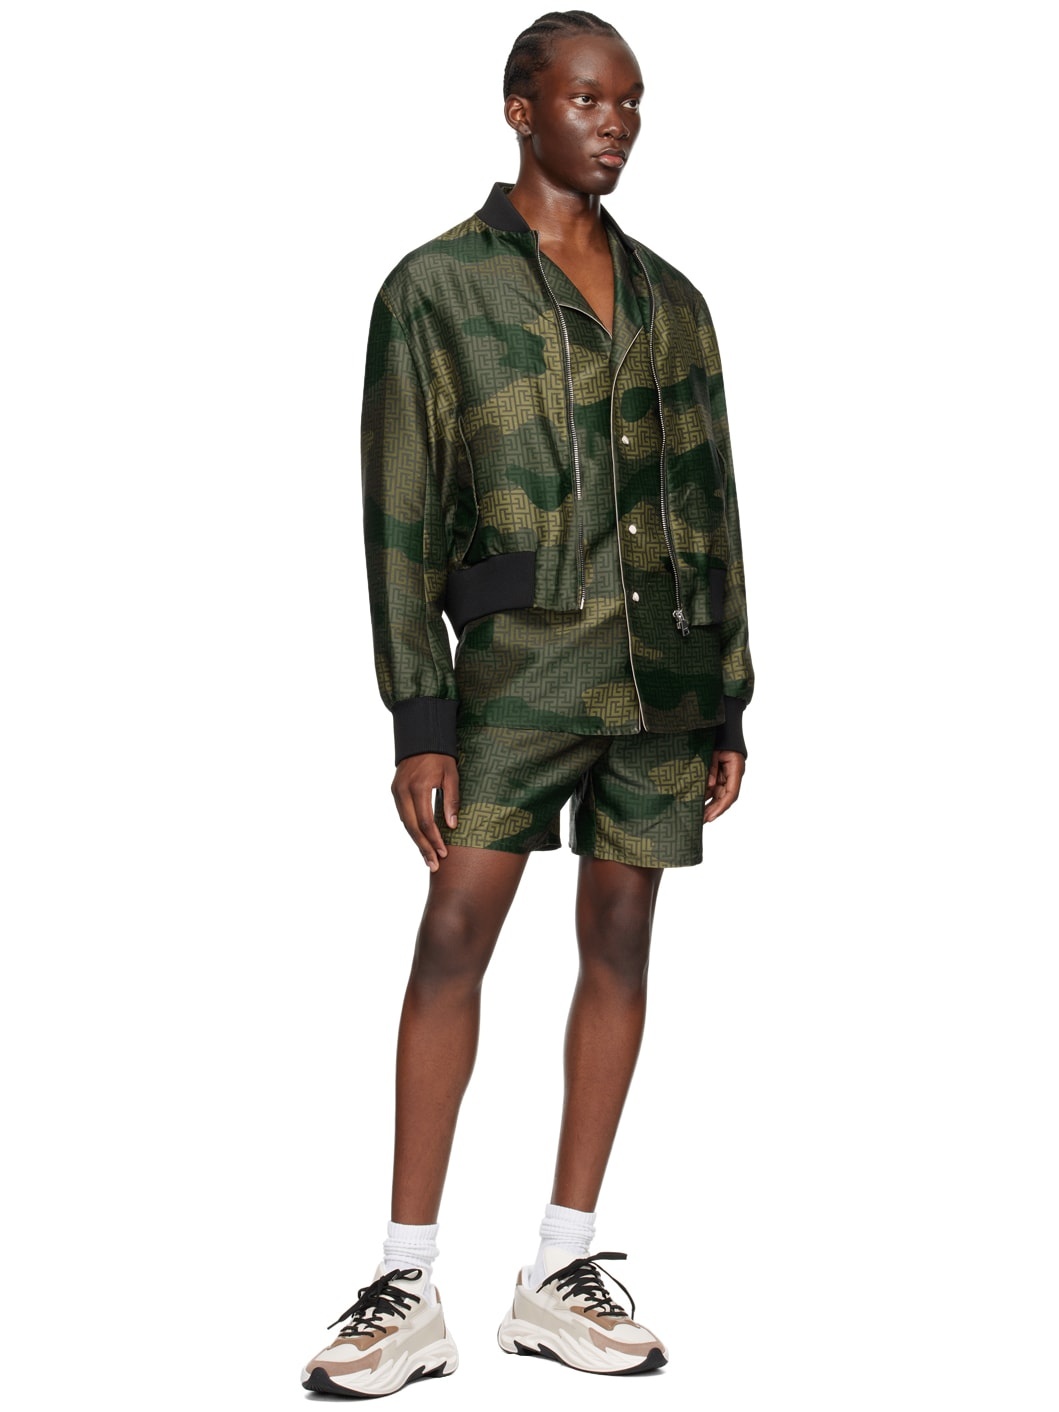 Khaki Camouflage Shorts - 4